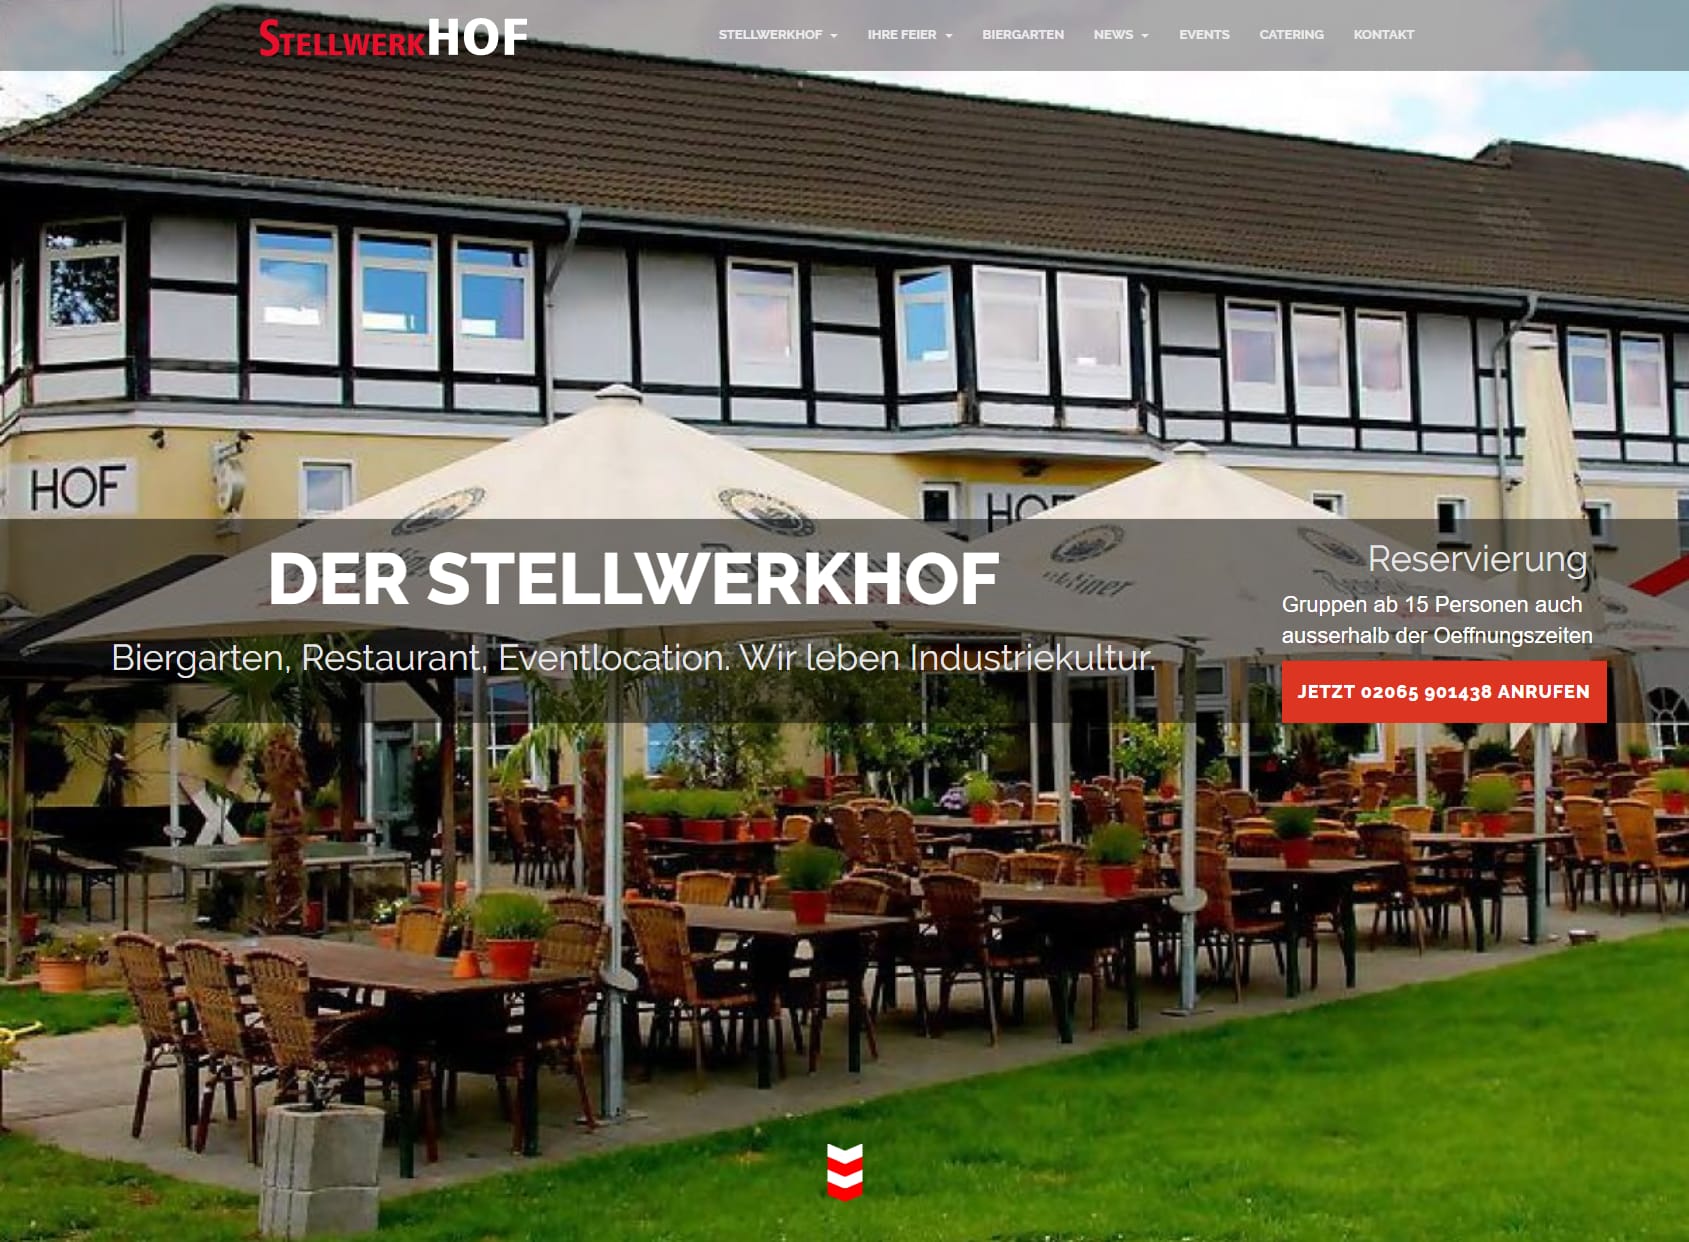 StellwerkHOF-Restaurant -Biergarten-Partyservice-Eventlocation